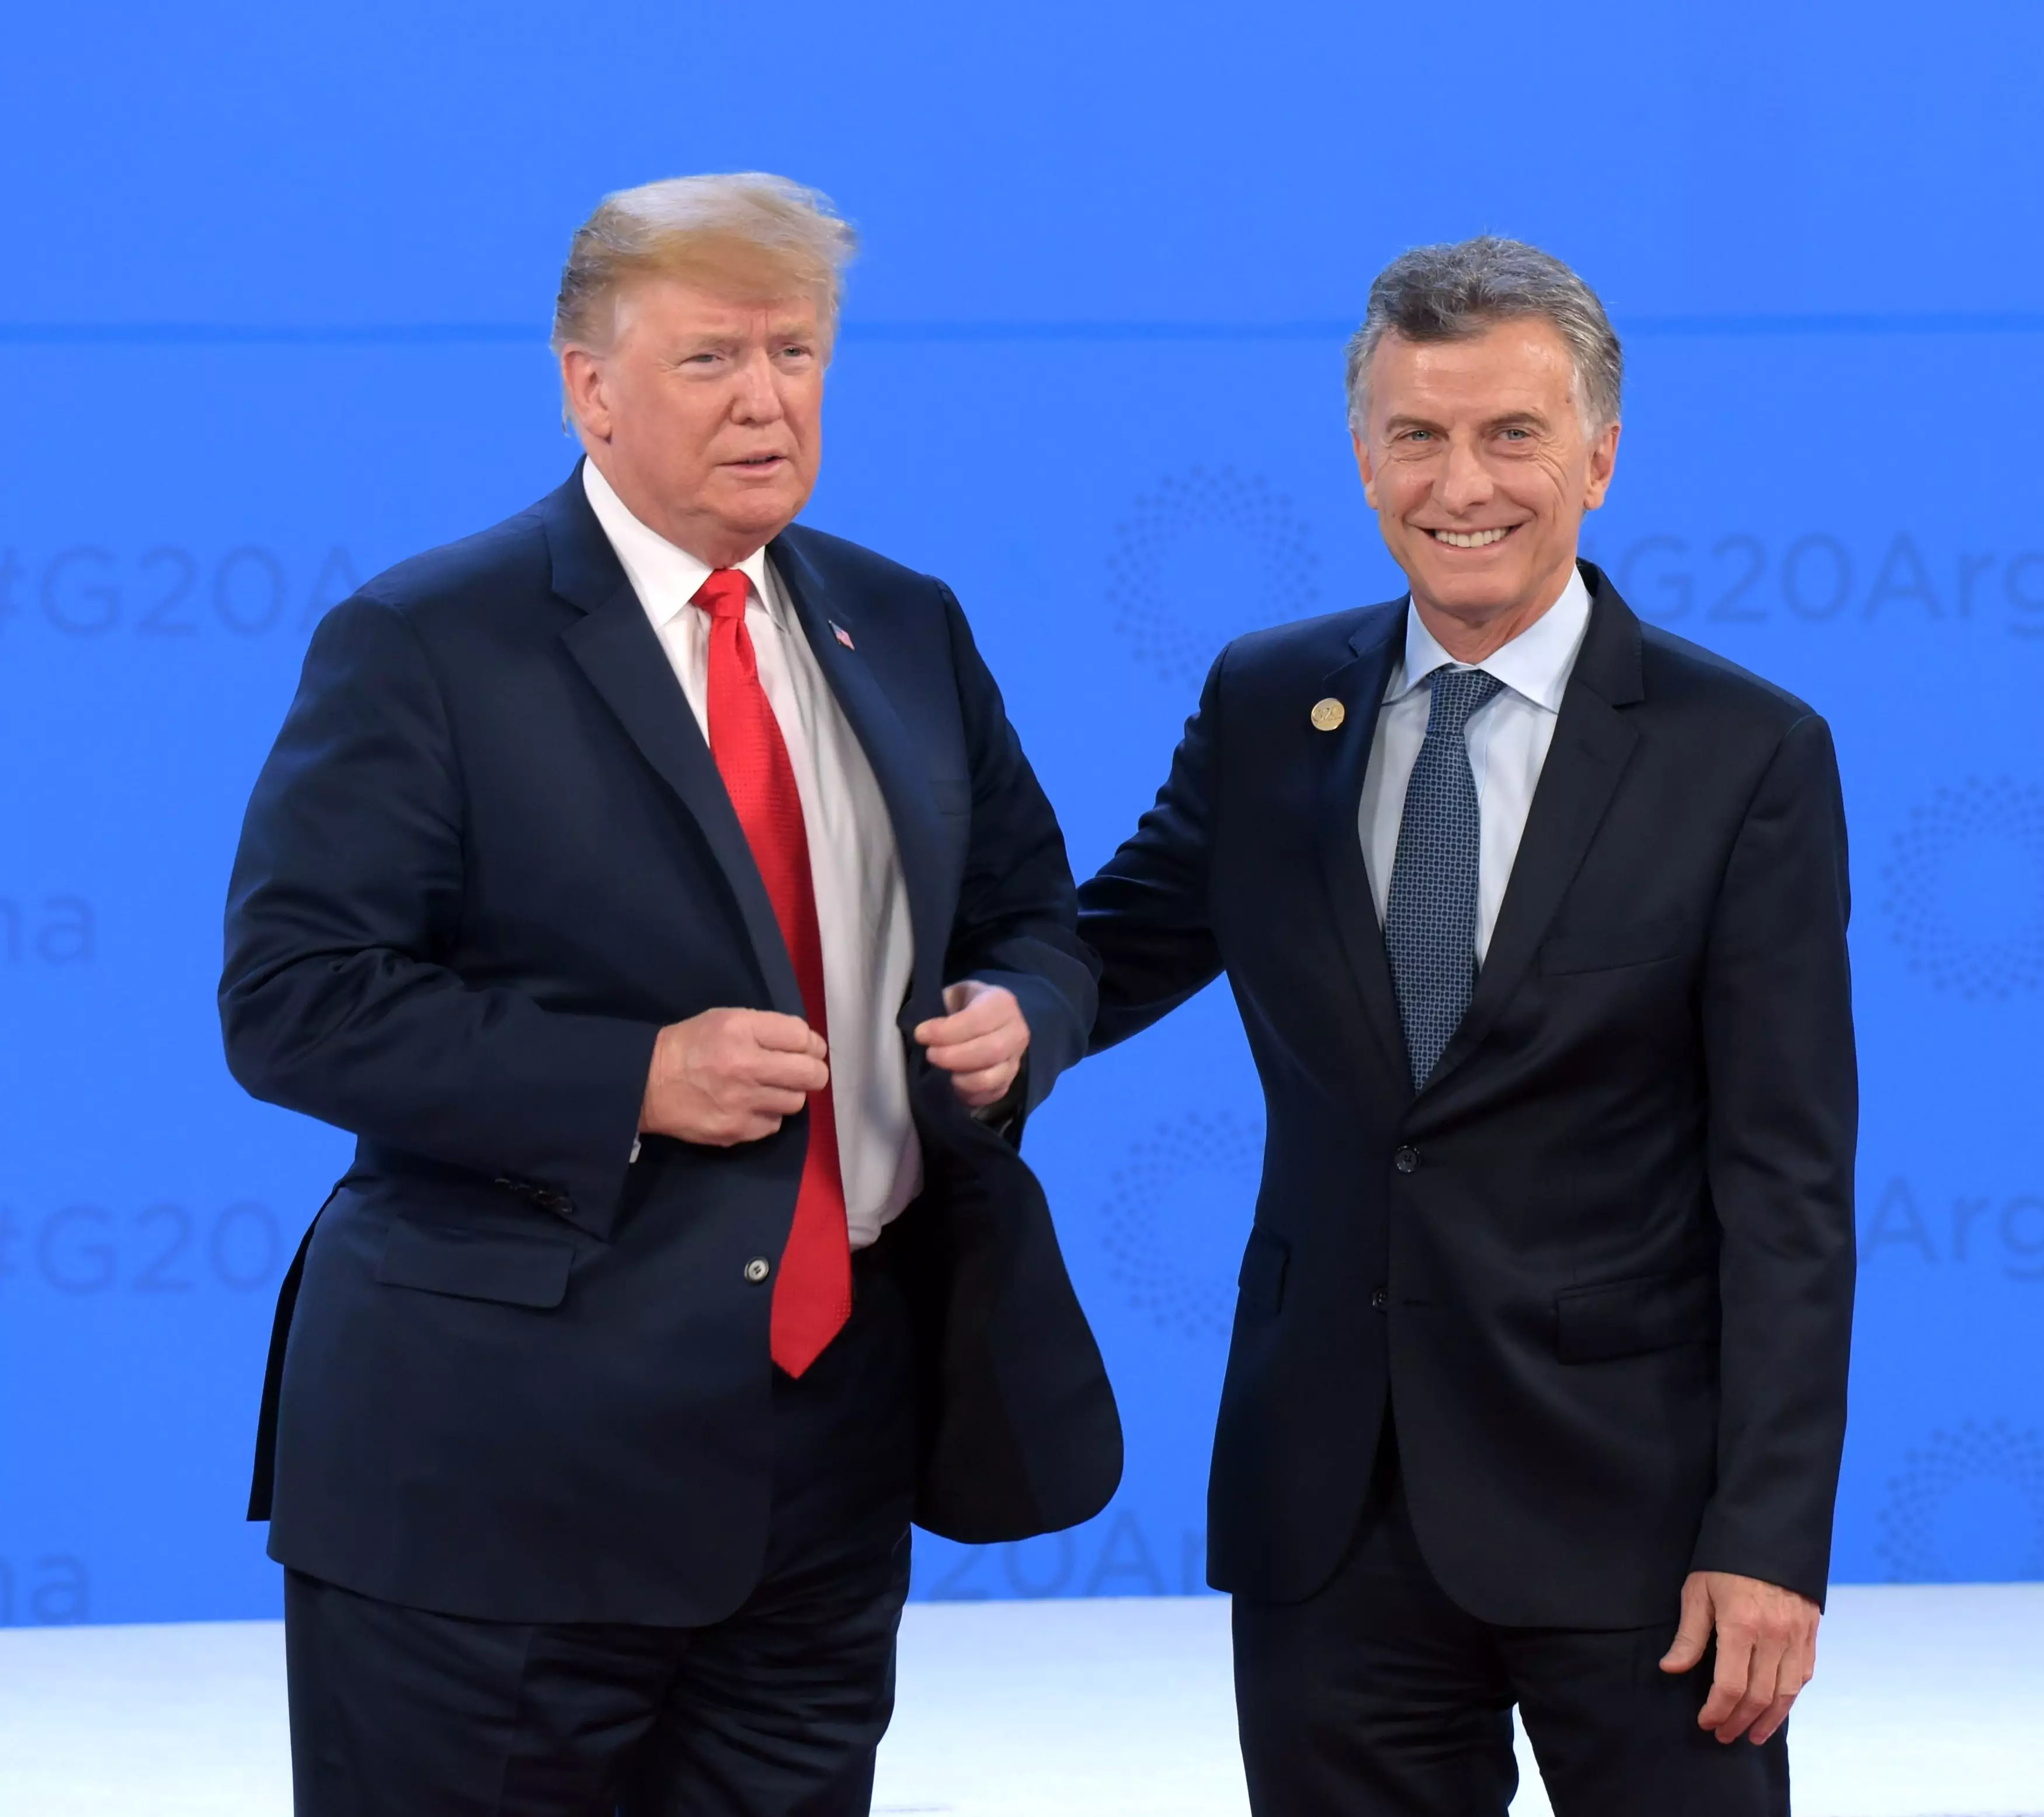 Trump and Macri at the G20 summit.